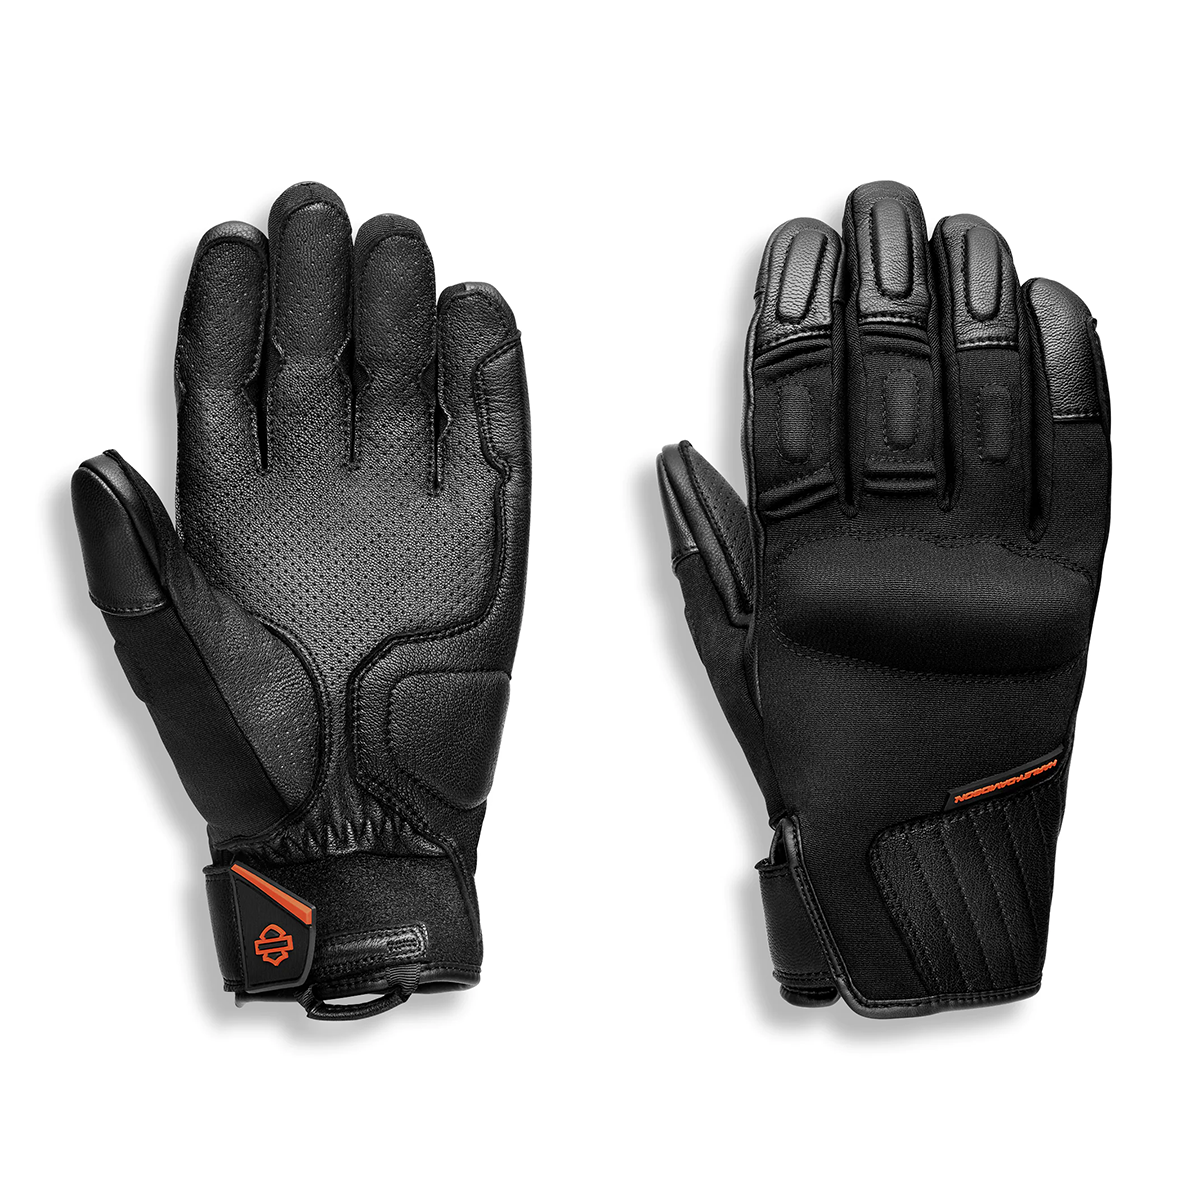 Harley-Davidson Men's H-D Brawler Full Finger Glove